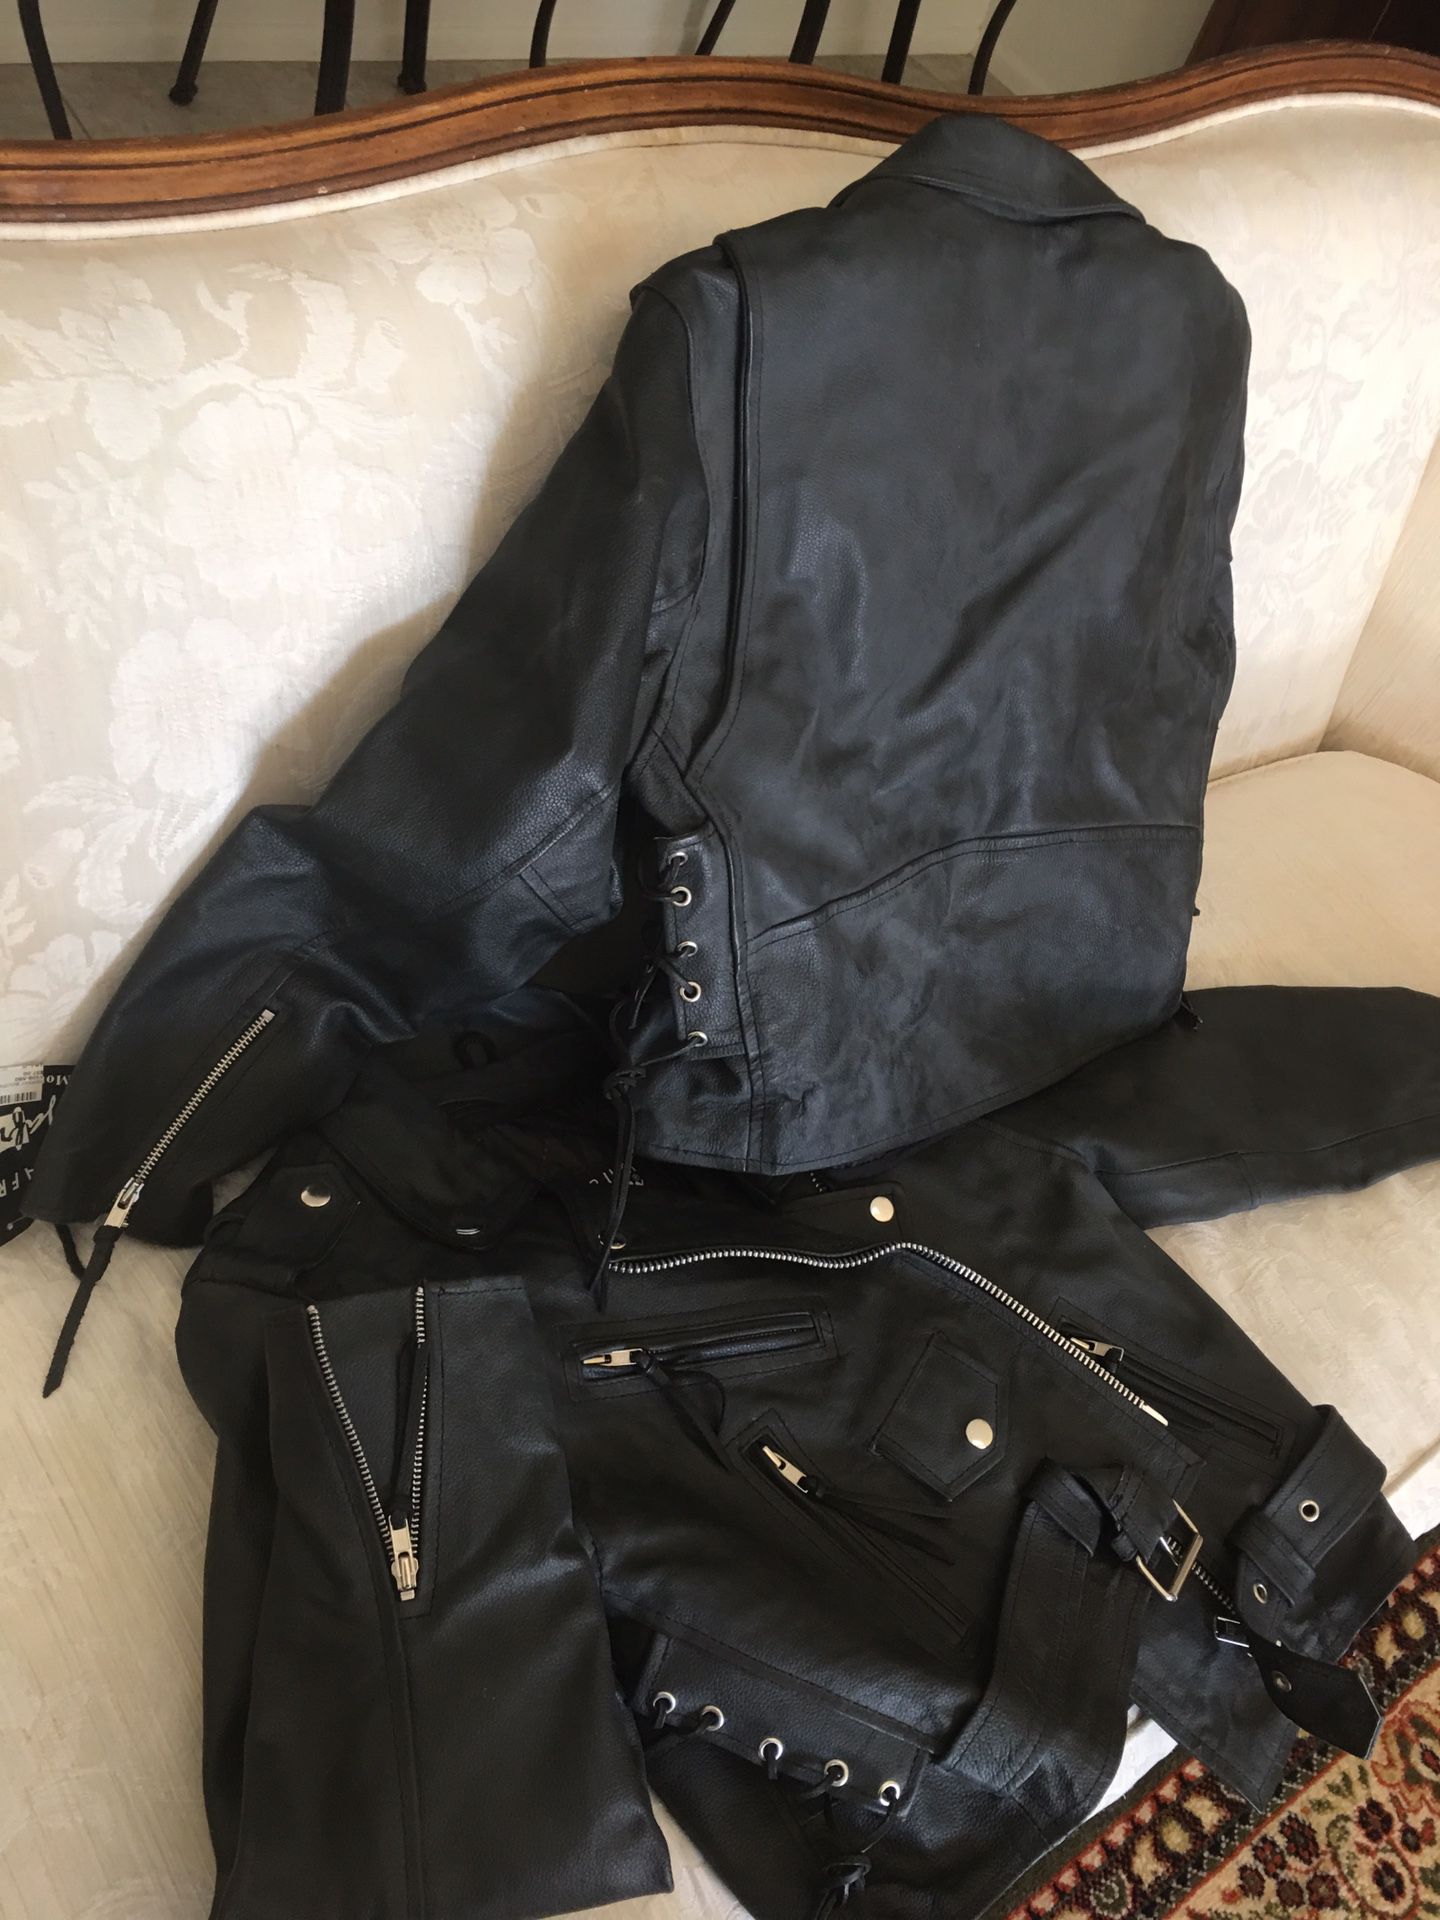 jafrum motorcycle gear leather jacket